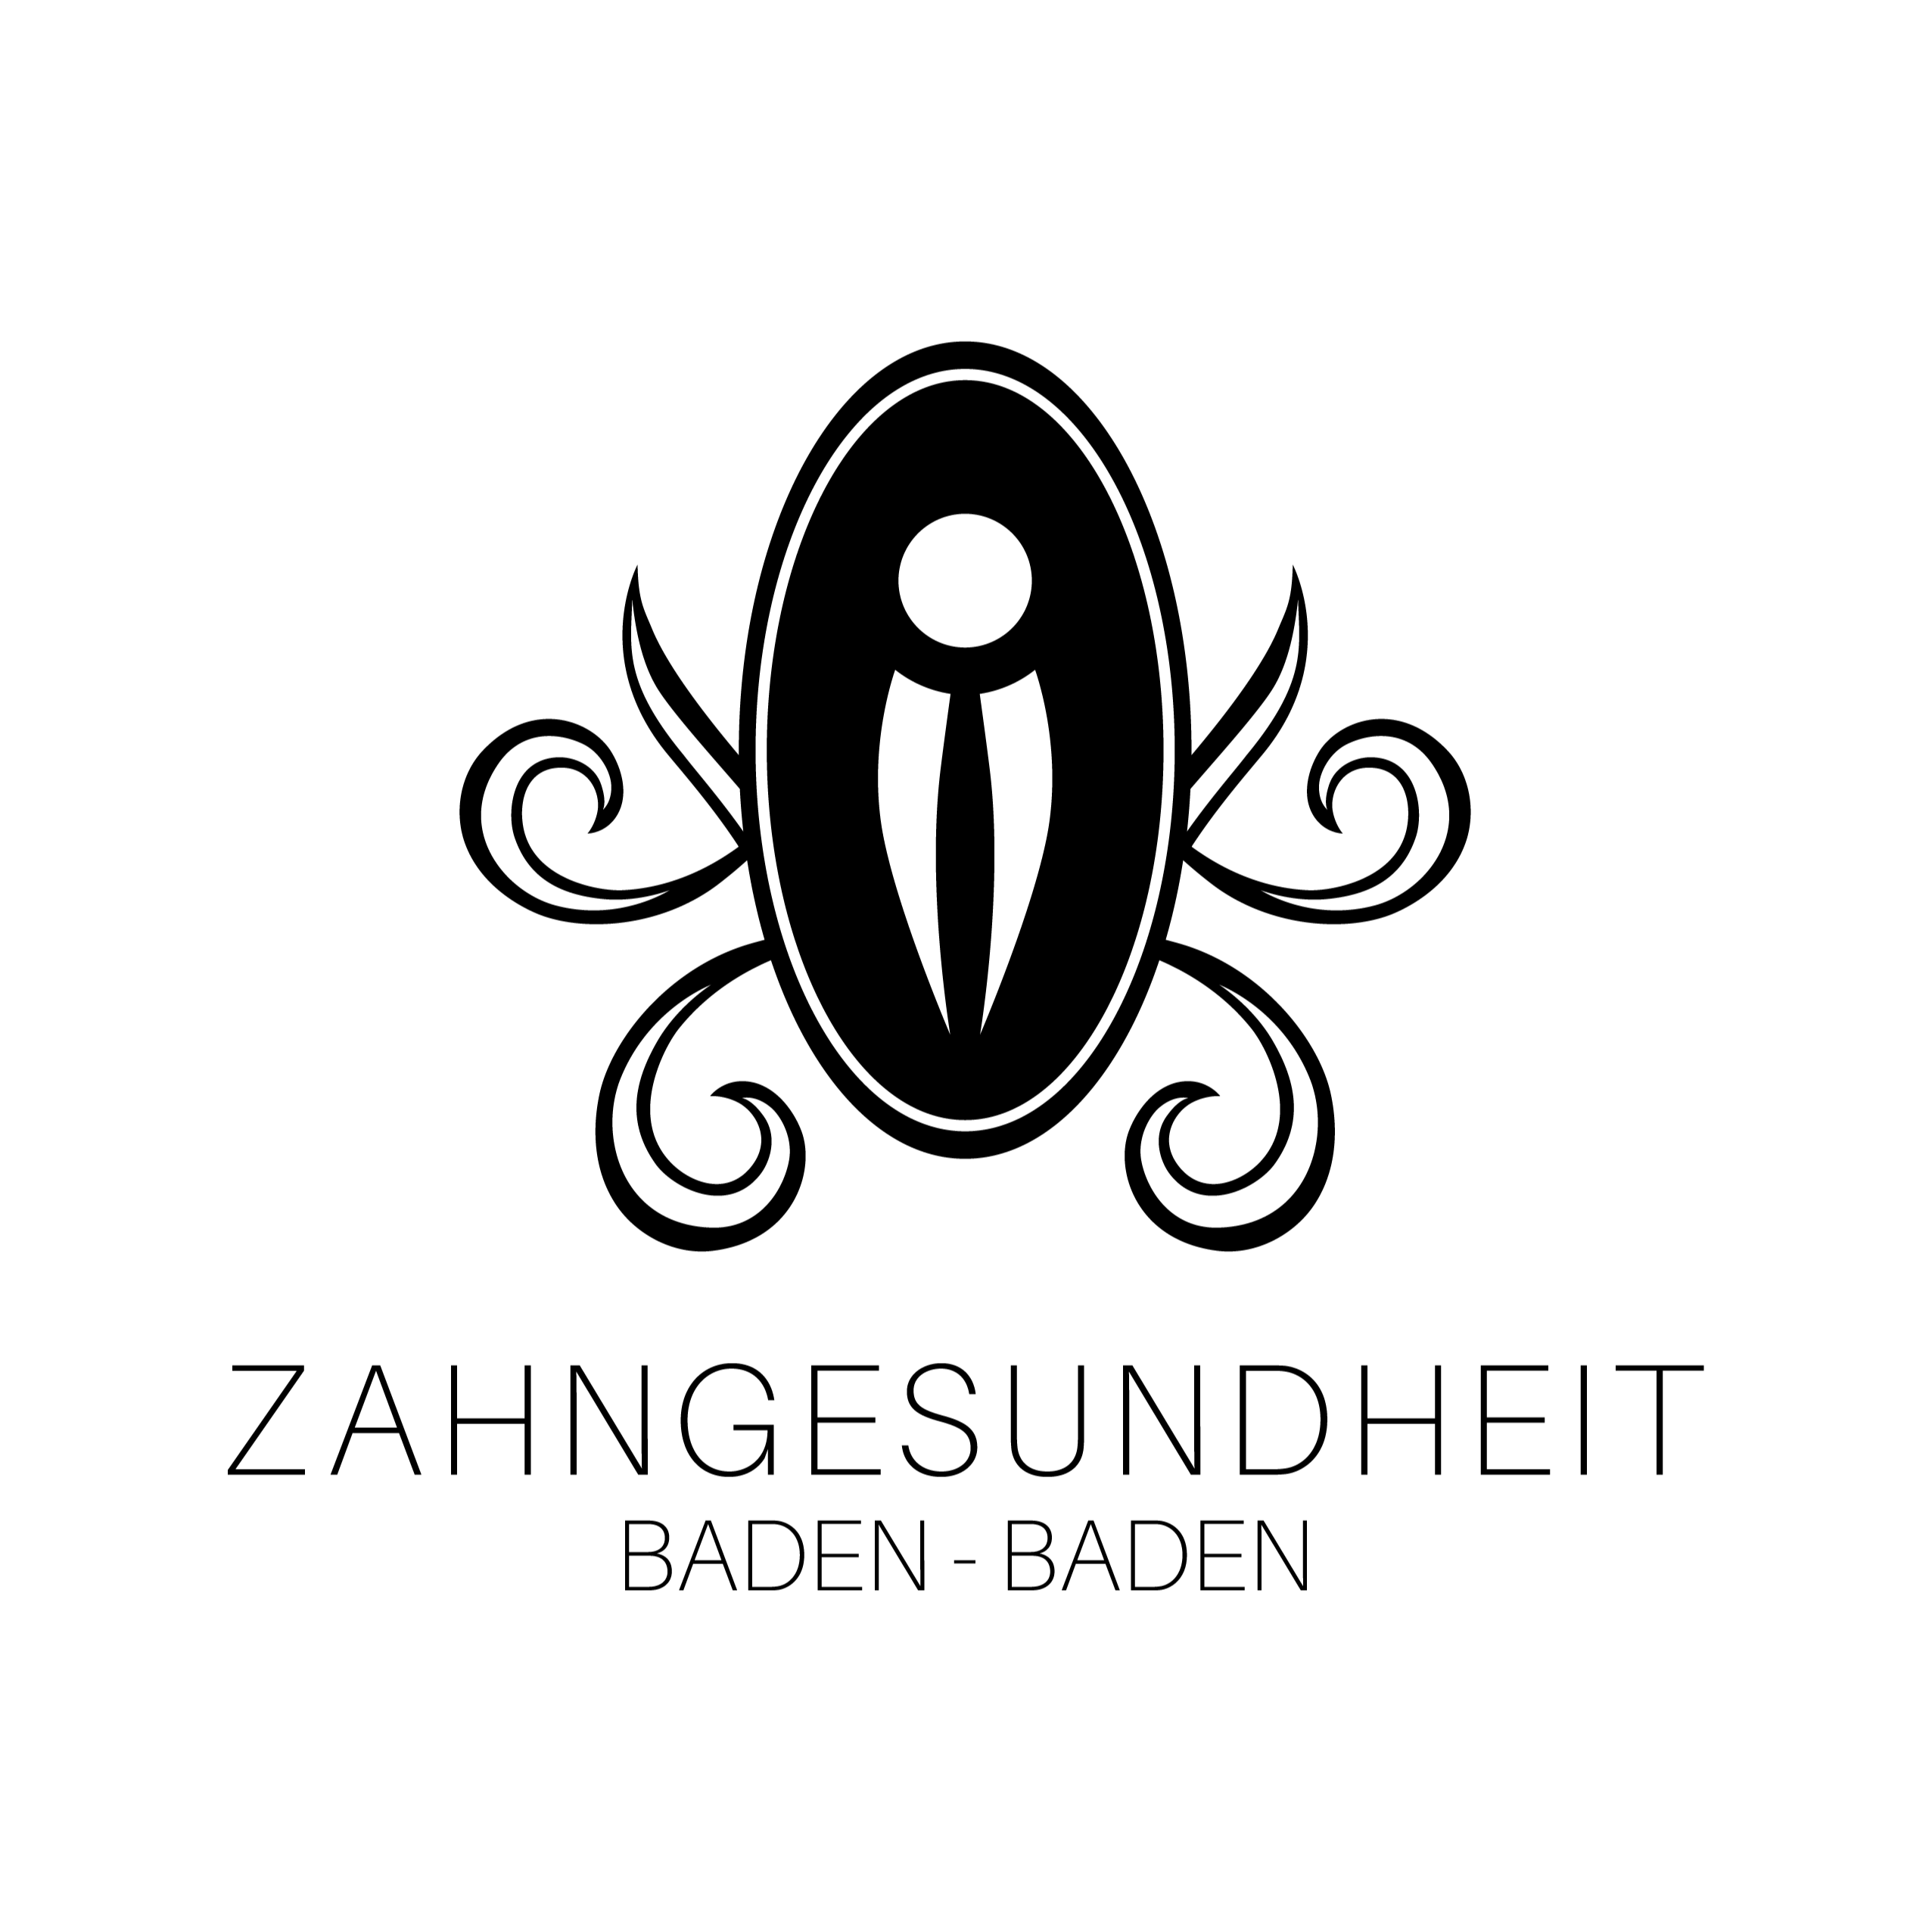 Zahngesundheit Baden-Baden - Prof. Dr. Kamm & Kollegen (Medical Center) in Baden-Baden - Logo